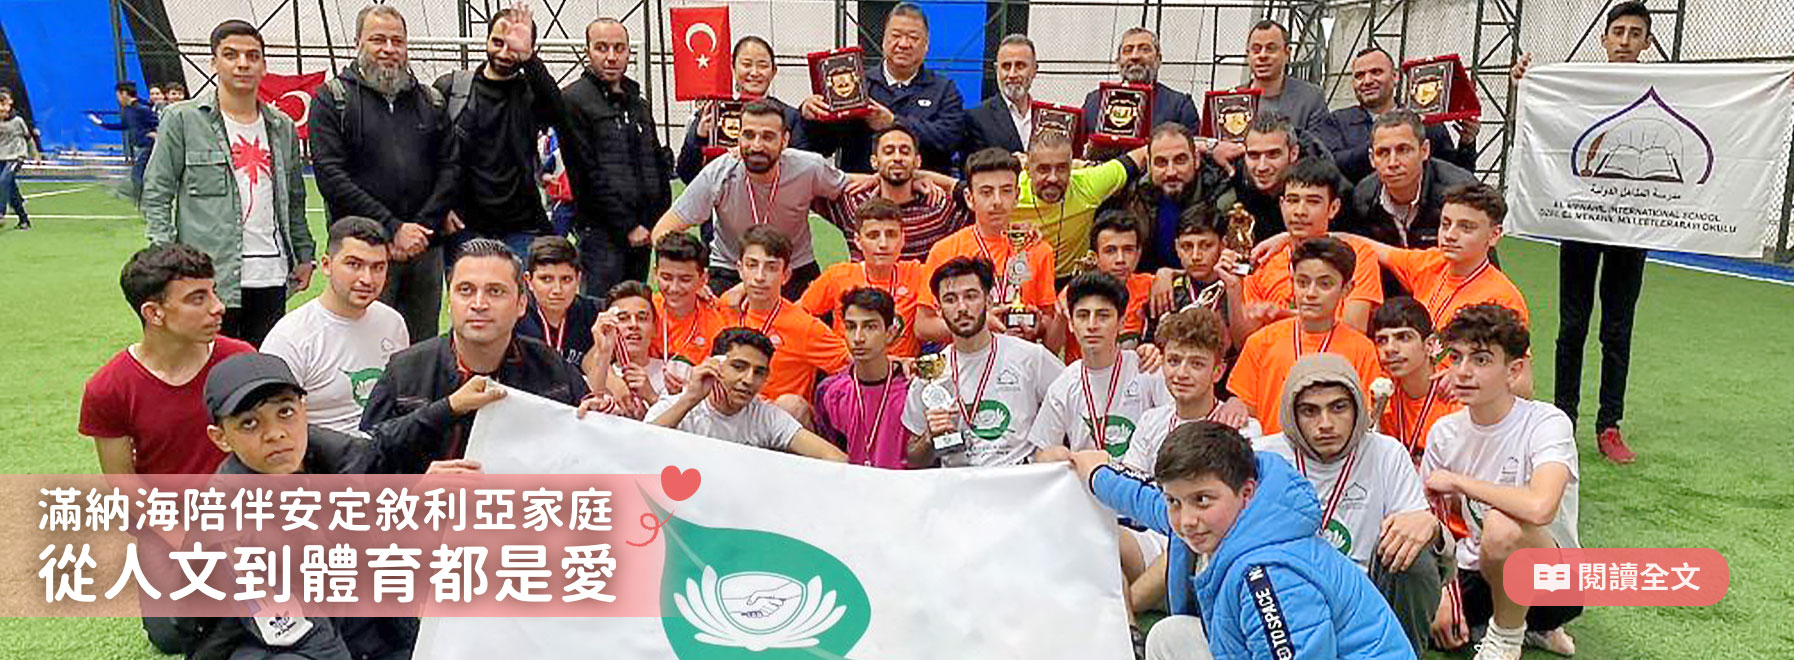 滿納海陪伴安定敘利亞家庭-從人文到體育都是愛！